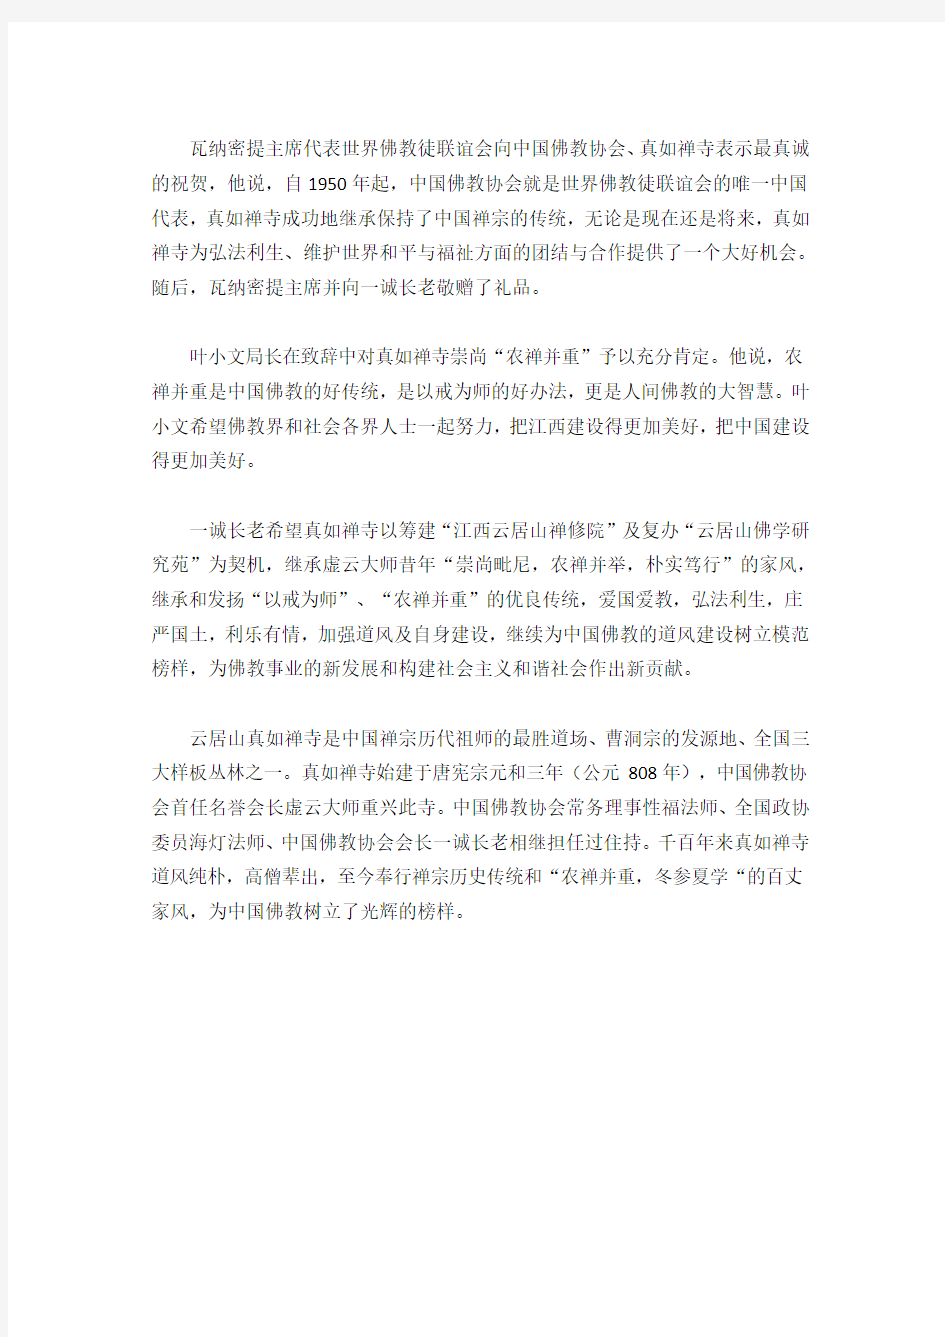 本刊讯2008年11月11日上午,由中国佛教协会、江西省佛教协会主办